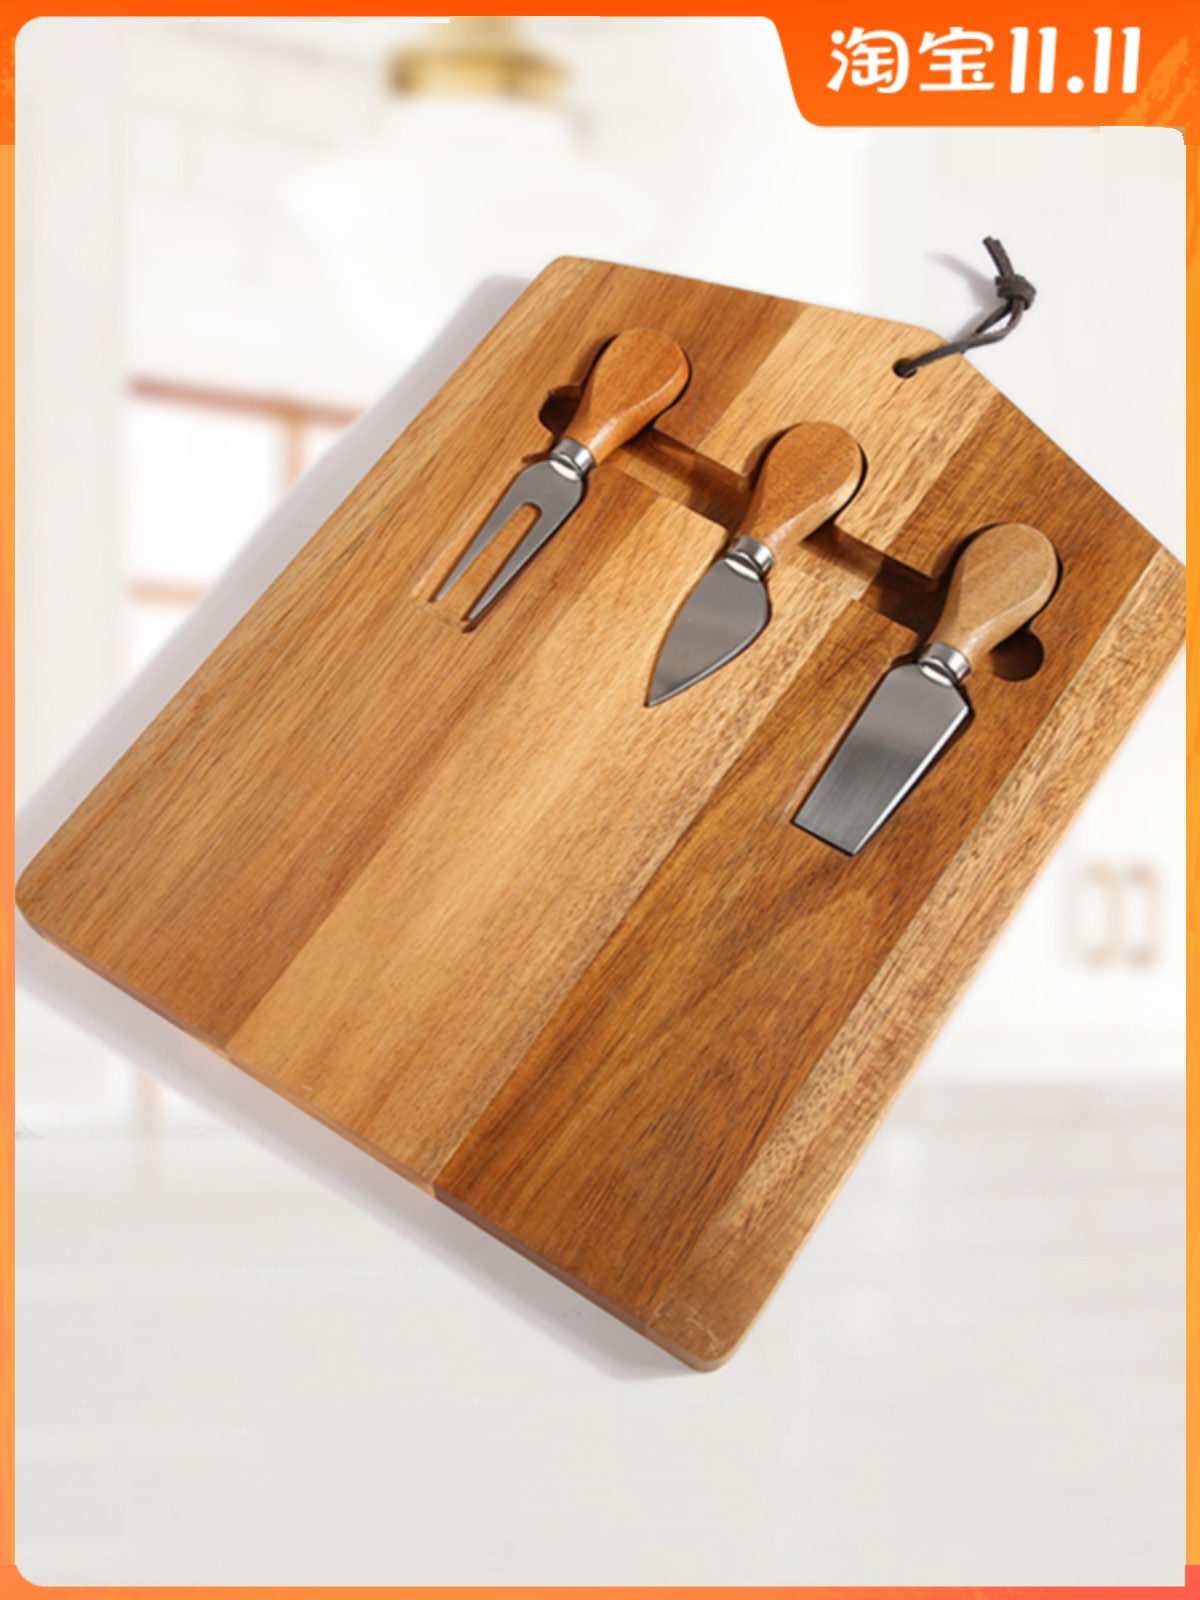 中式相思木實木牛排烘焙麵包板熟食託板案板砧板水果切菜板 (8.3折)